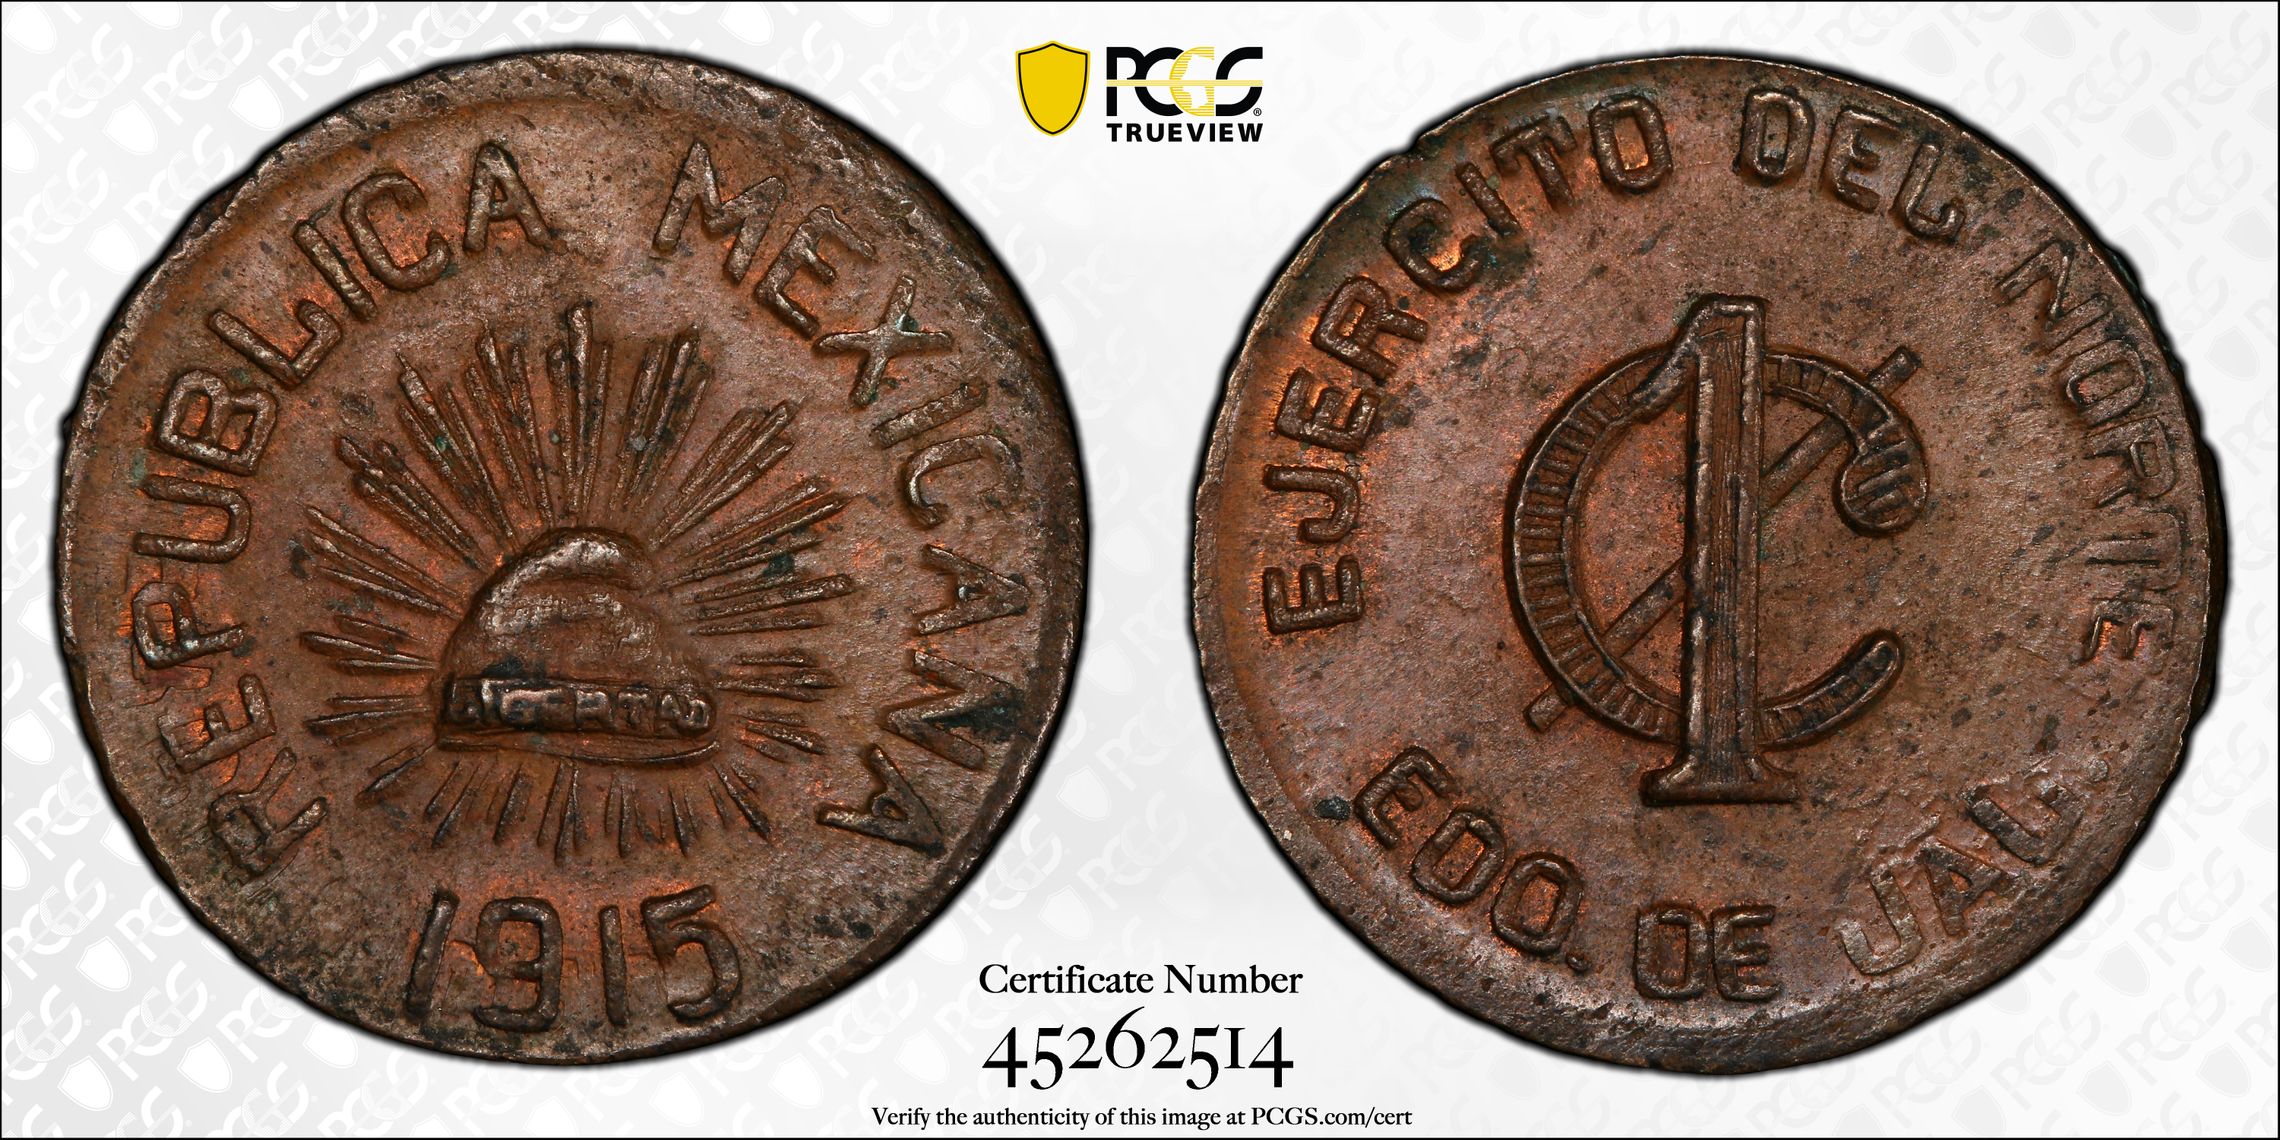 PCGS 钱币信息| 认证编号#45262514 - 1915 Mex-Jalisco 1C